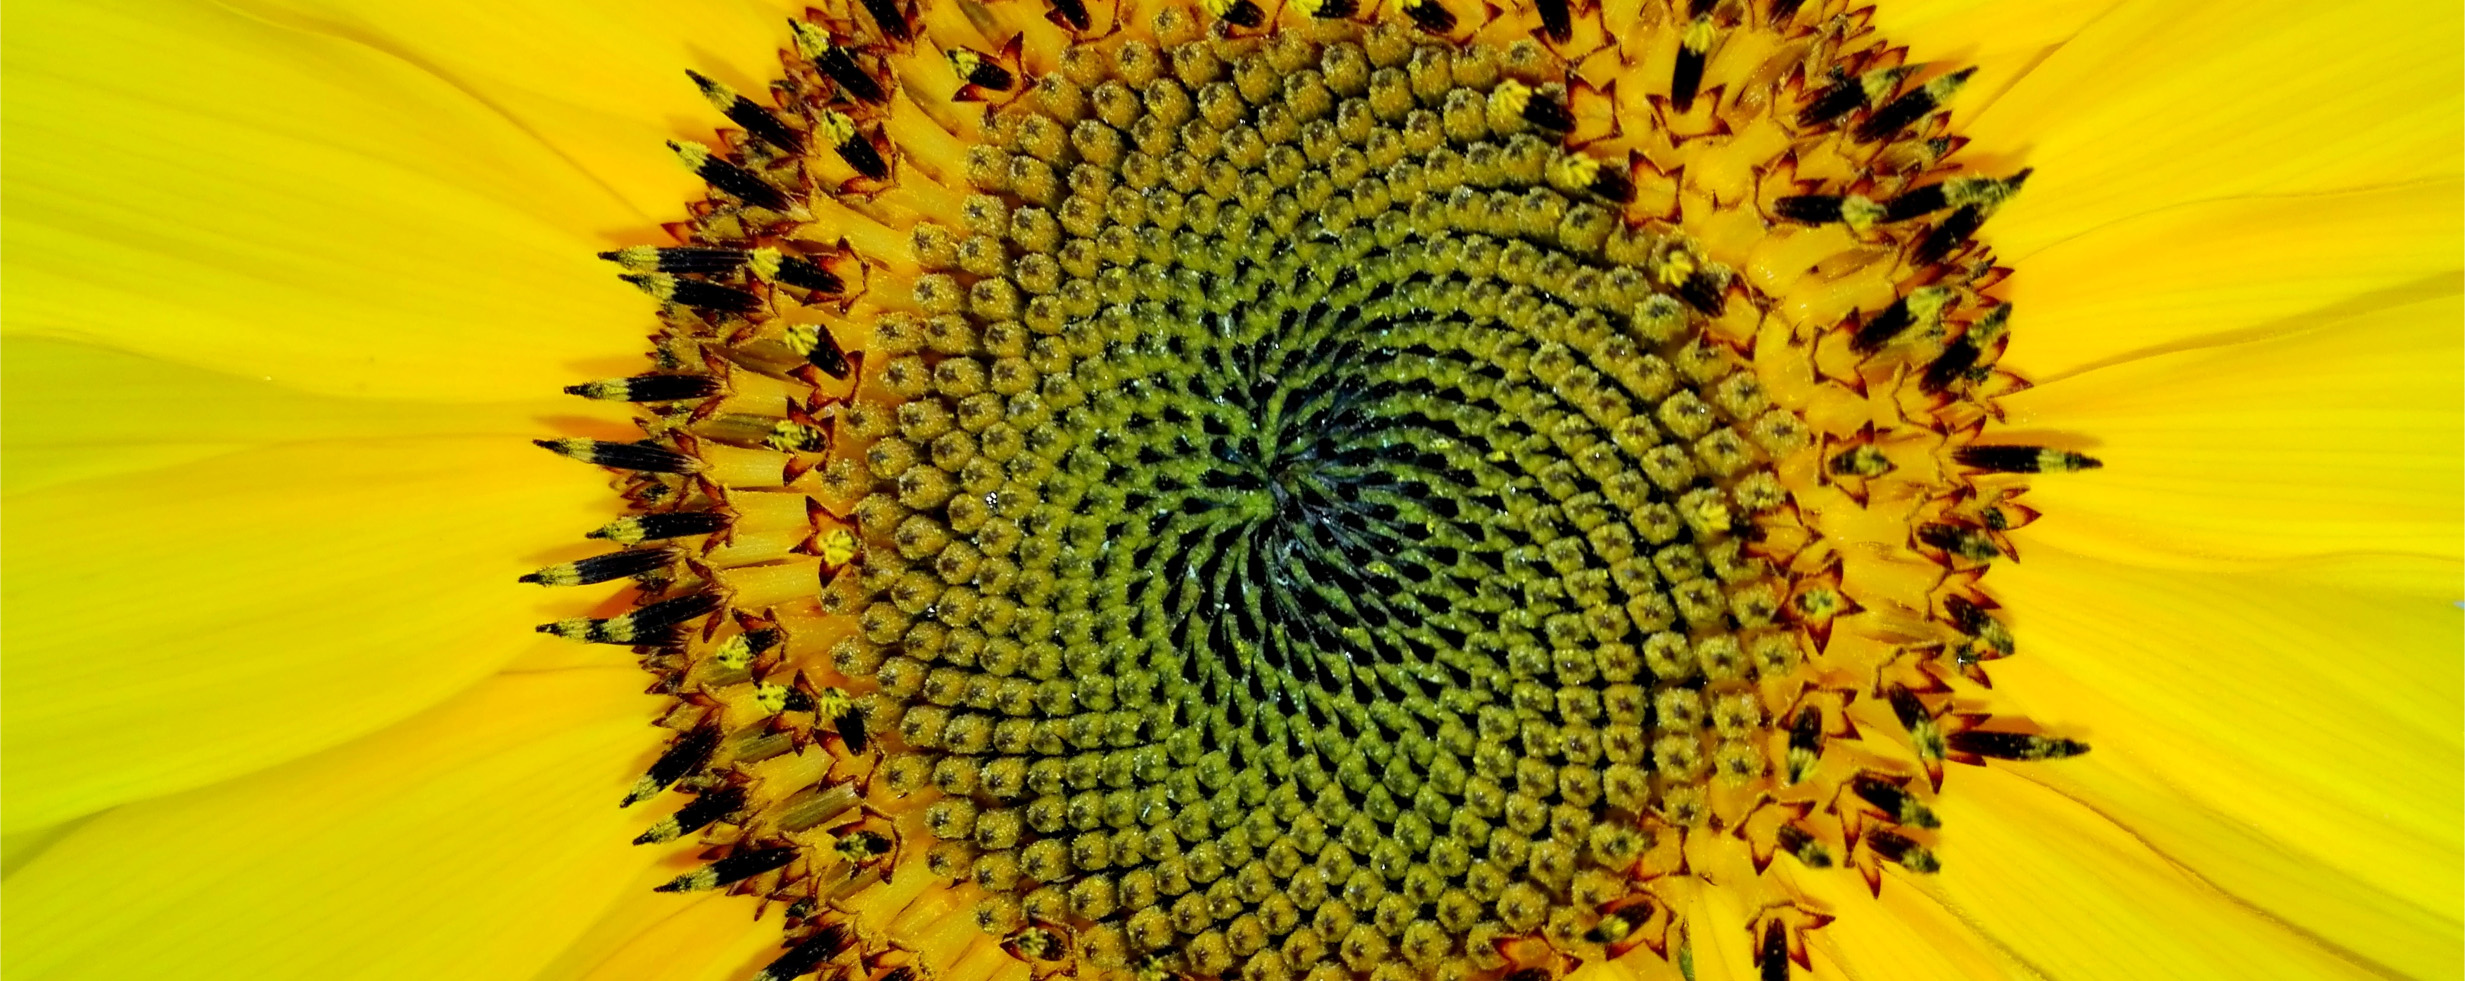 La suite de Fibonacci